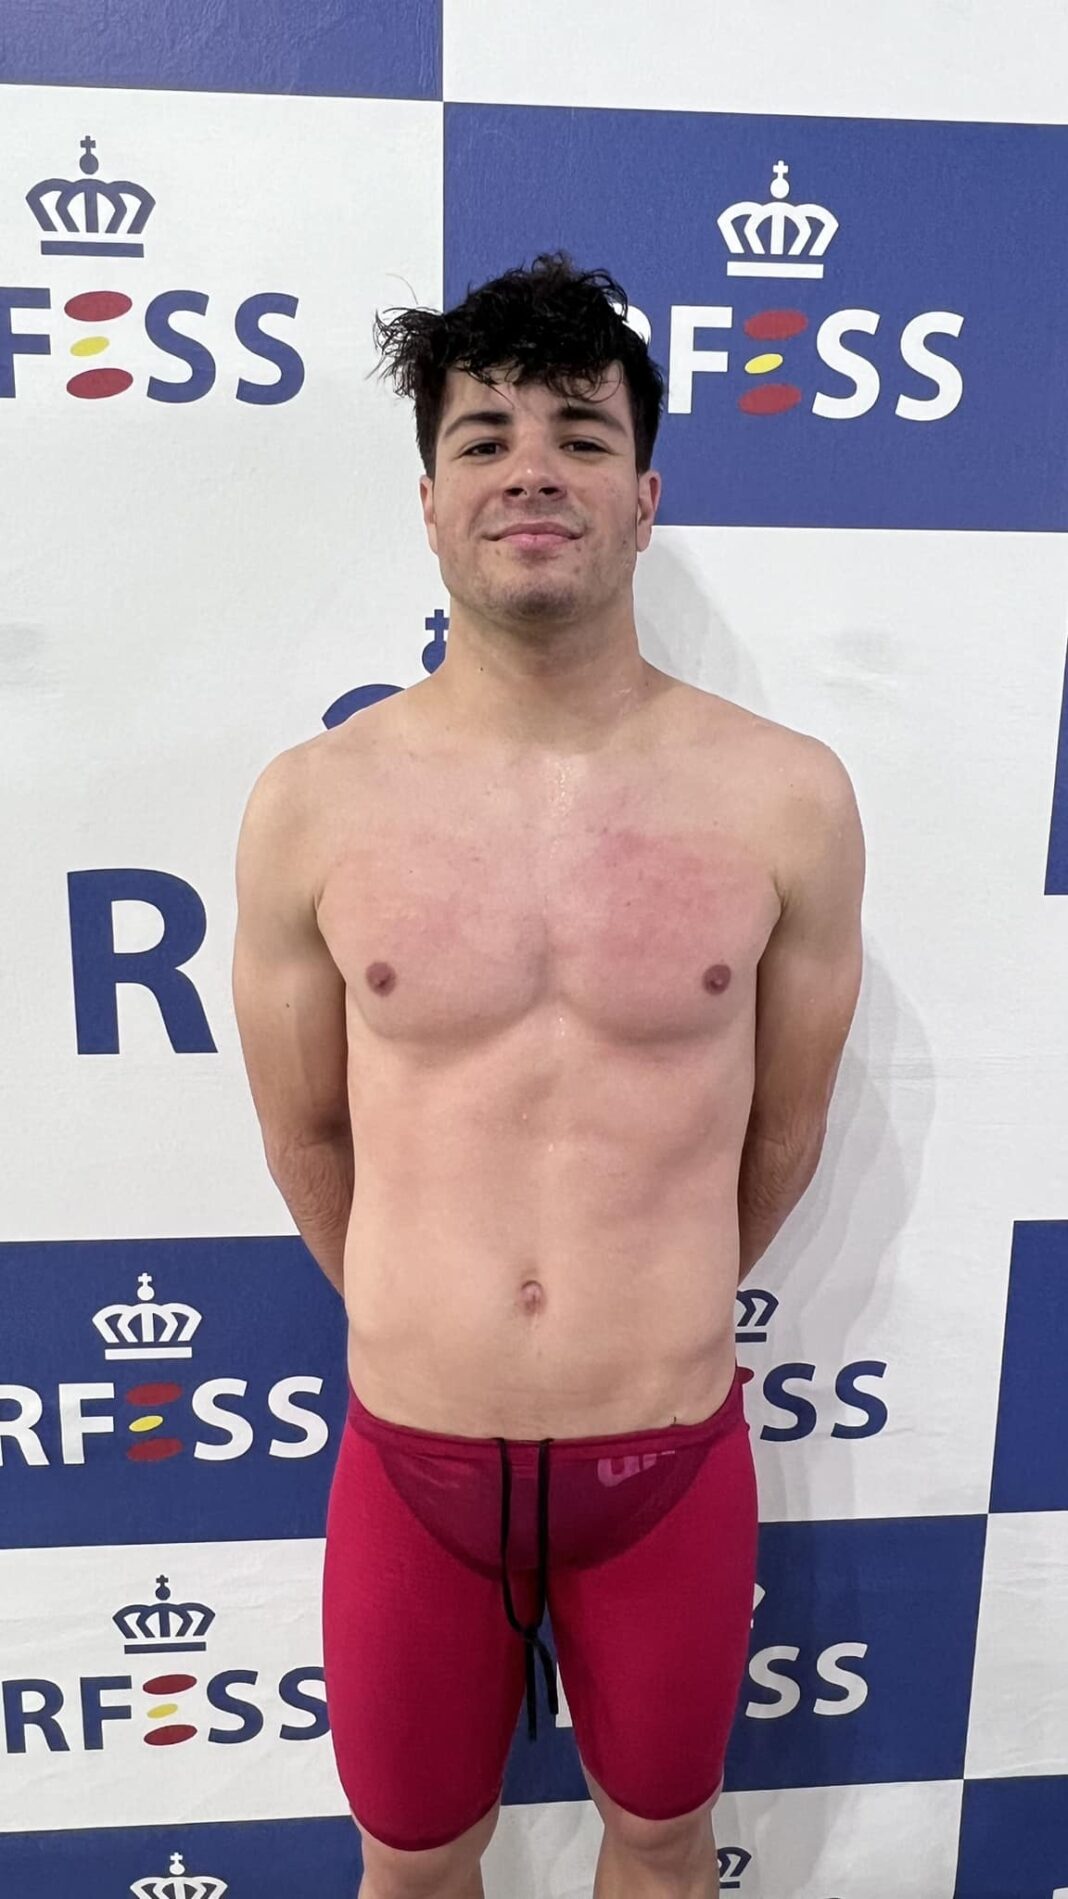 Javier Pérez Sánchez (Club Alcarreño de Salvamento y Socorrismo) – Récord de España 200 metros supersocorrista en categoría absoluta masculina (02:08:09 frente a 02:09:19).